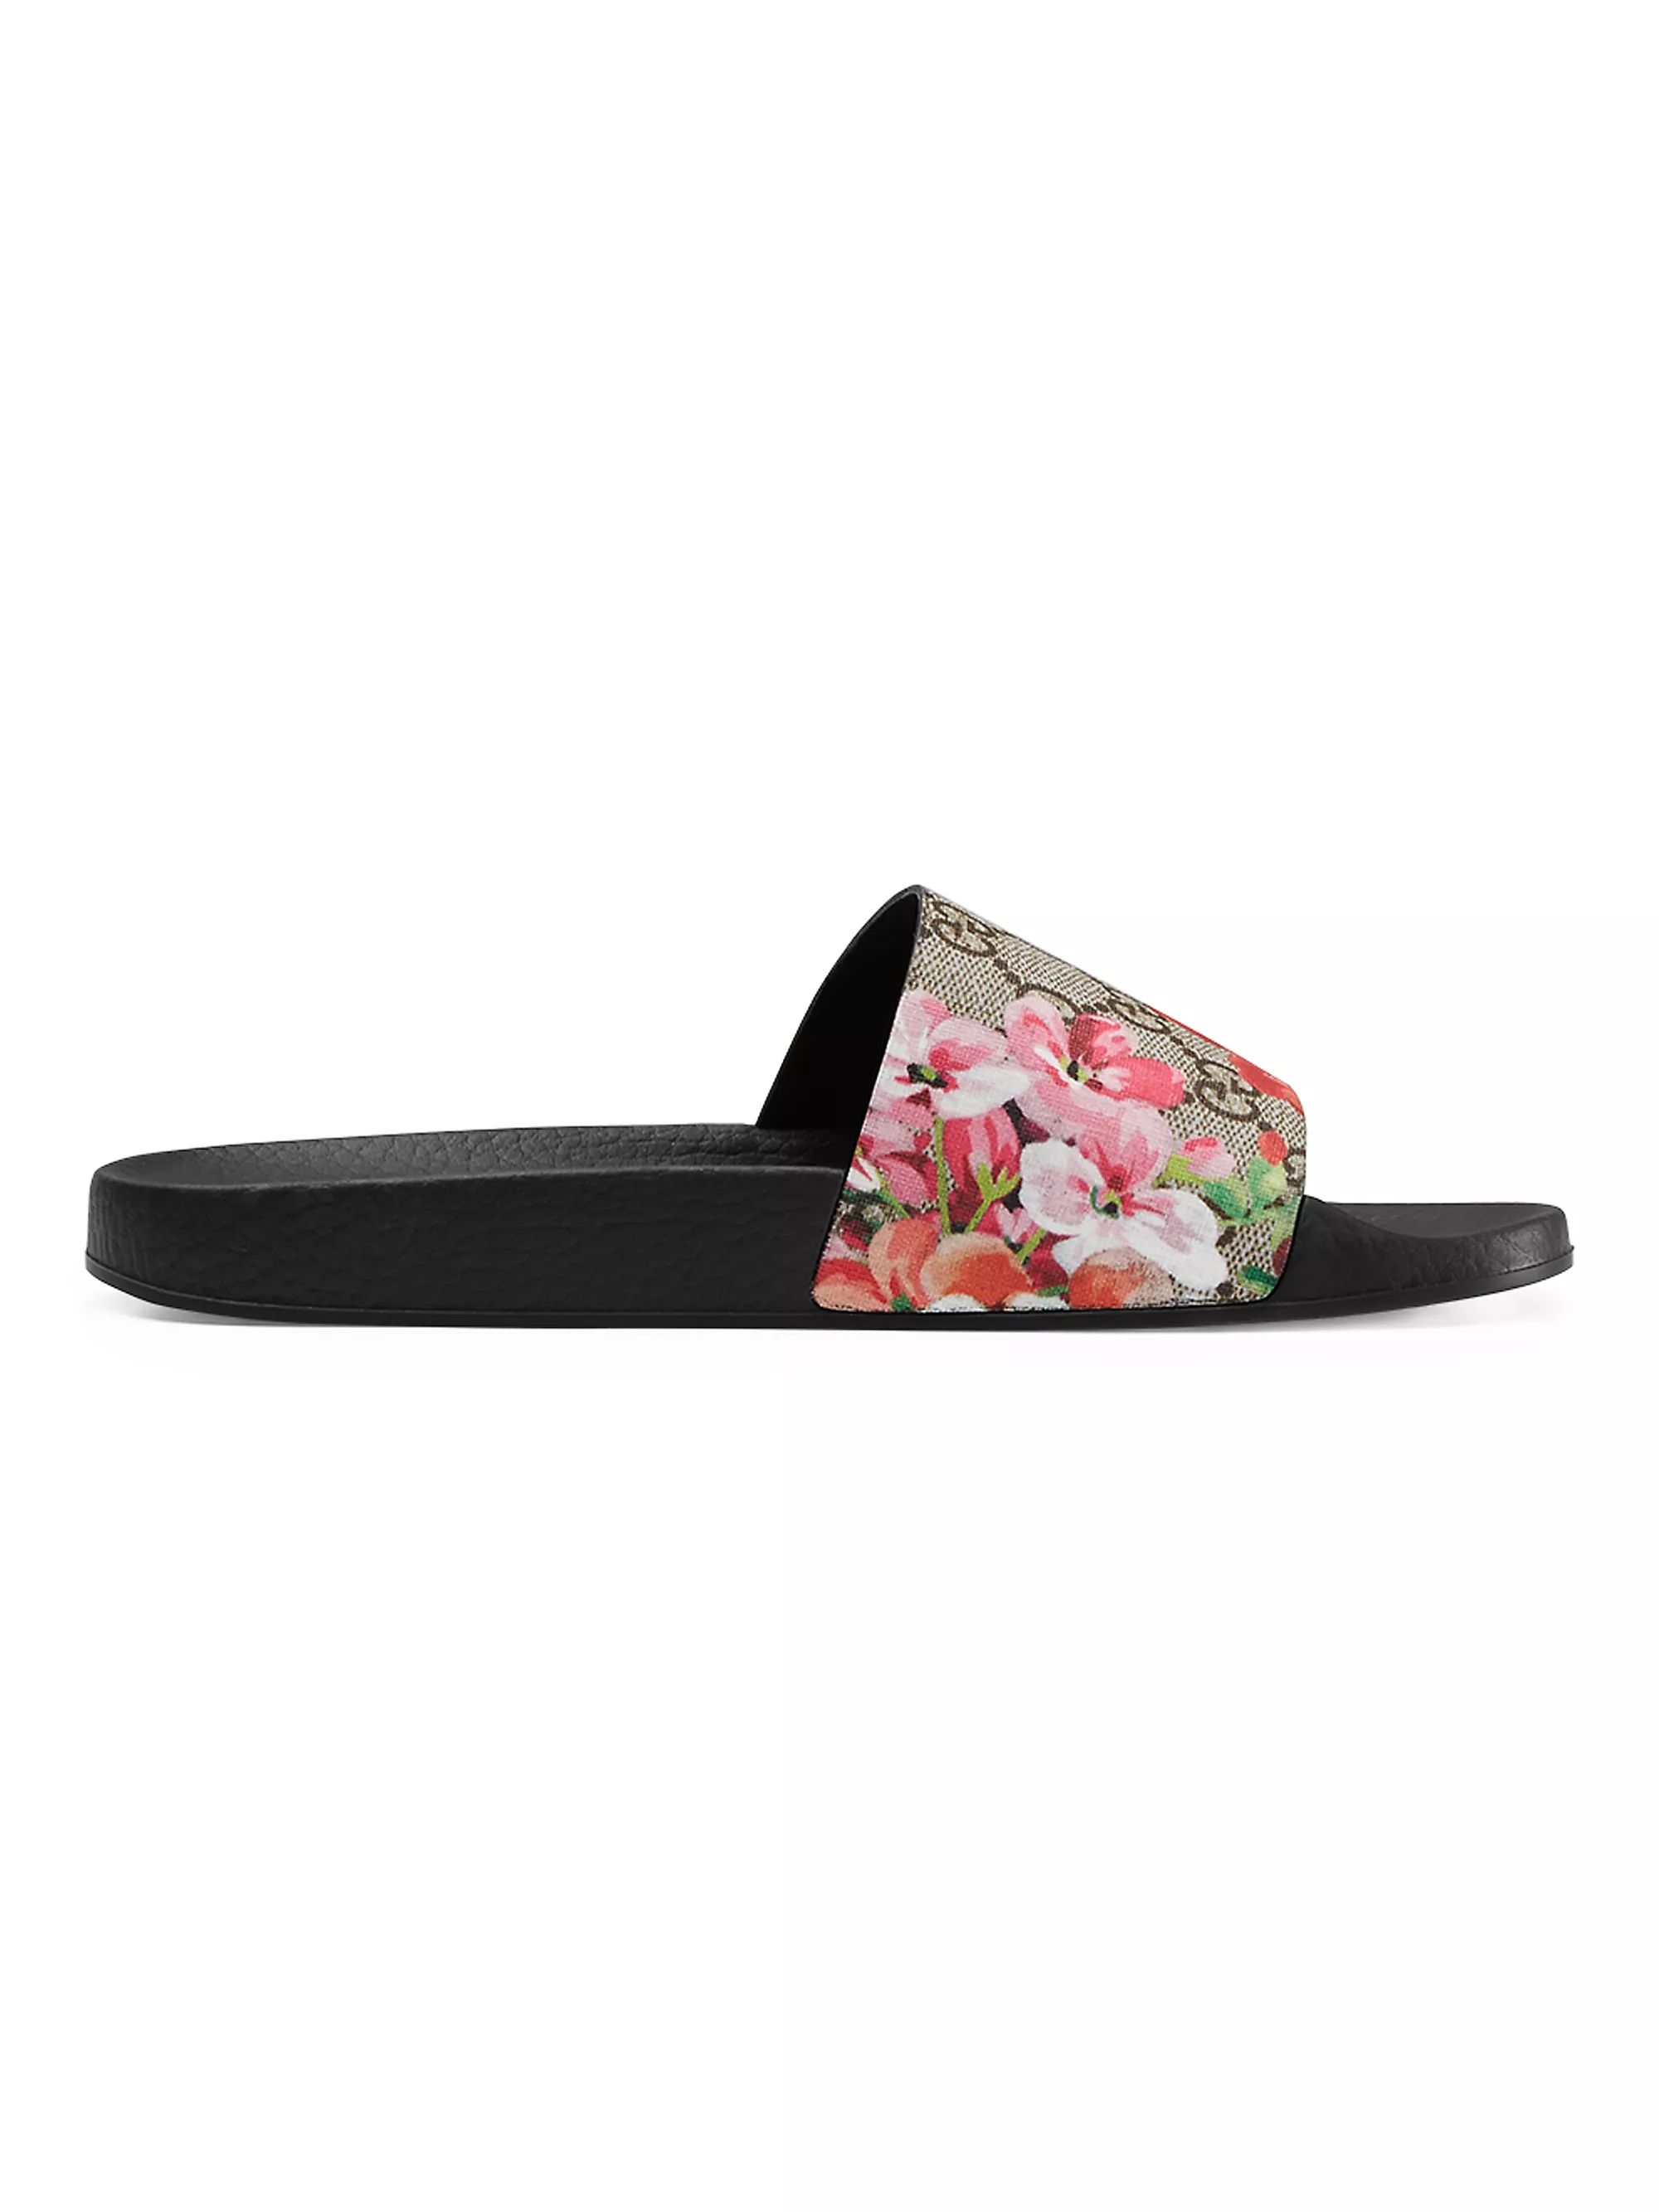 GG Blooms Supreme Slide Sandals | Saks Fifth Avenue